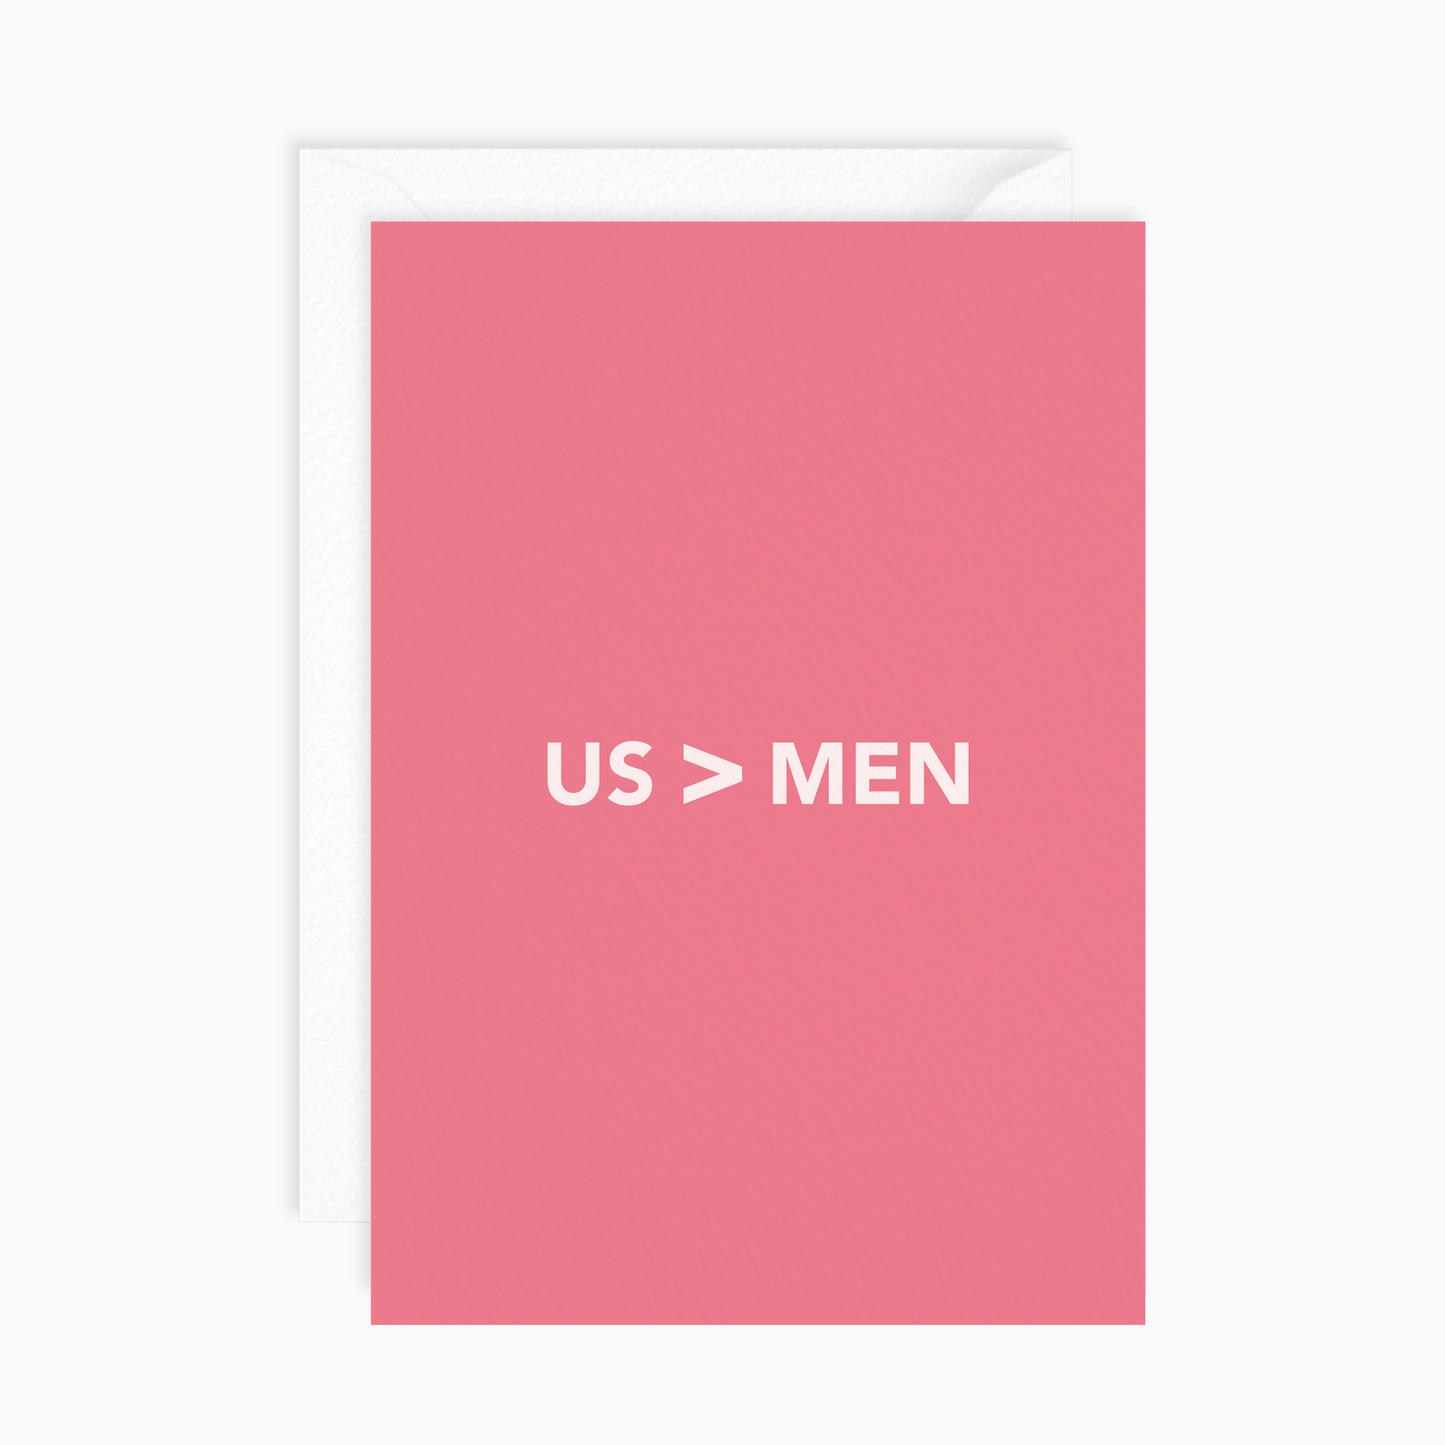 US > MEN Card